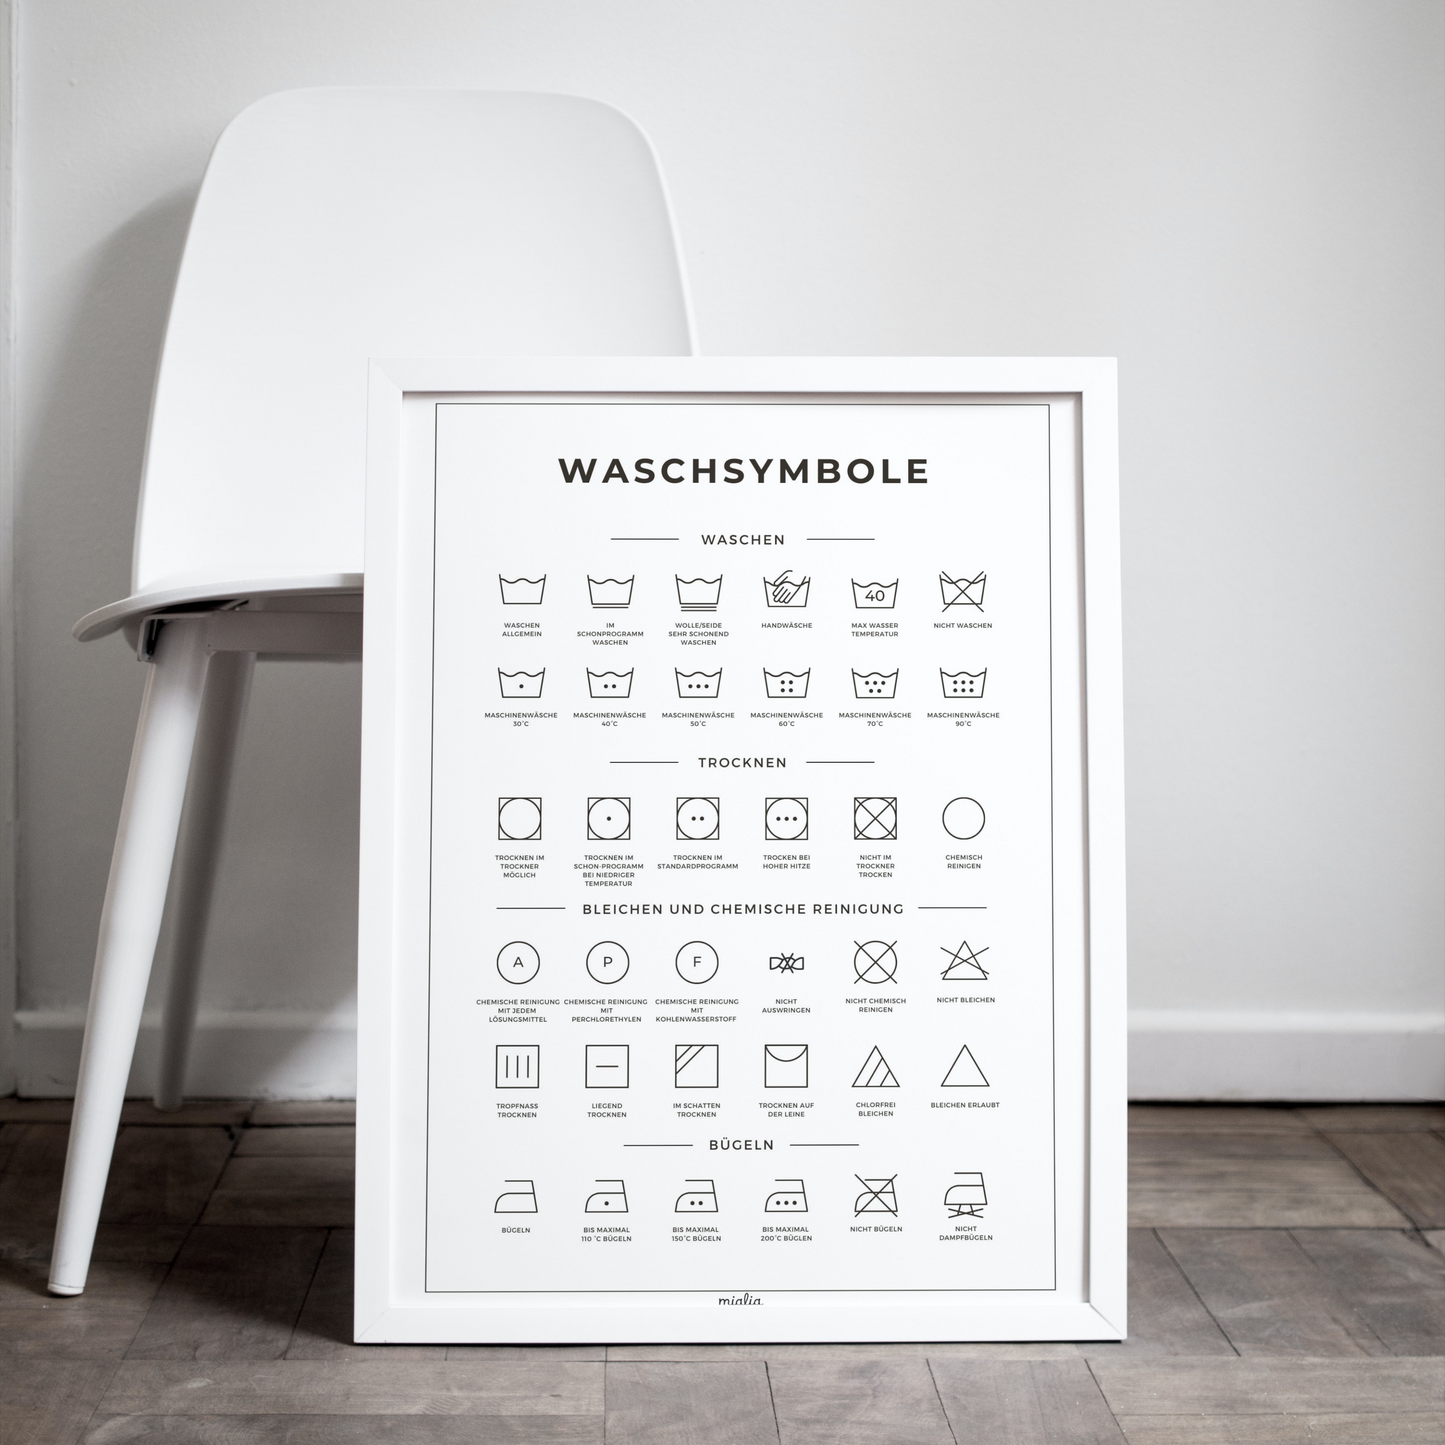 Waschsymbole Guide, Textilpflege & Wäschezeichen Erklärung, Waschsymbole, Waschsymbol Erklärung